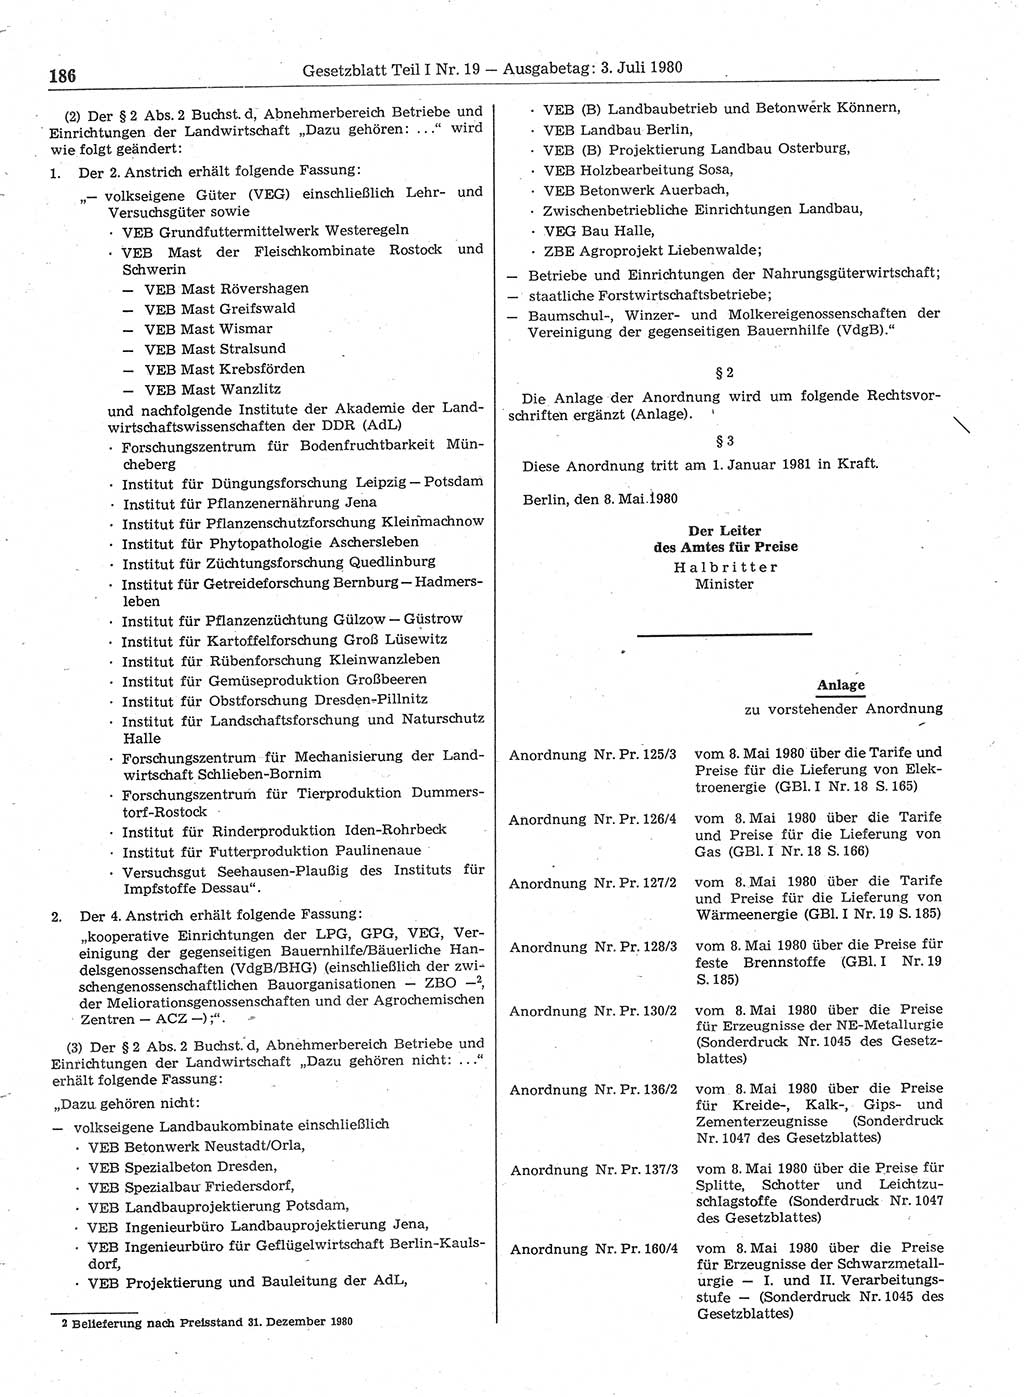 Gesetzblatt (GBl.) der Deutschen Demokratischen Republik (DDR) Teil Ⅰ 1980, Seite 186 (GBl. DDR Ⅰ 1980, S. 186)